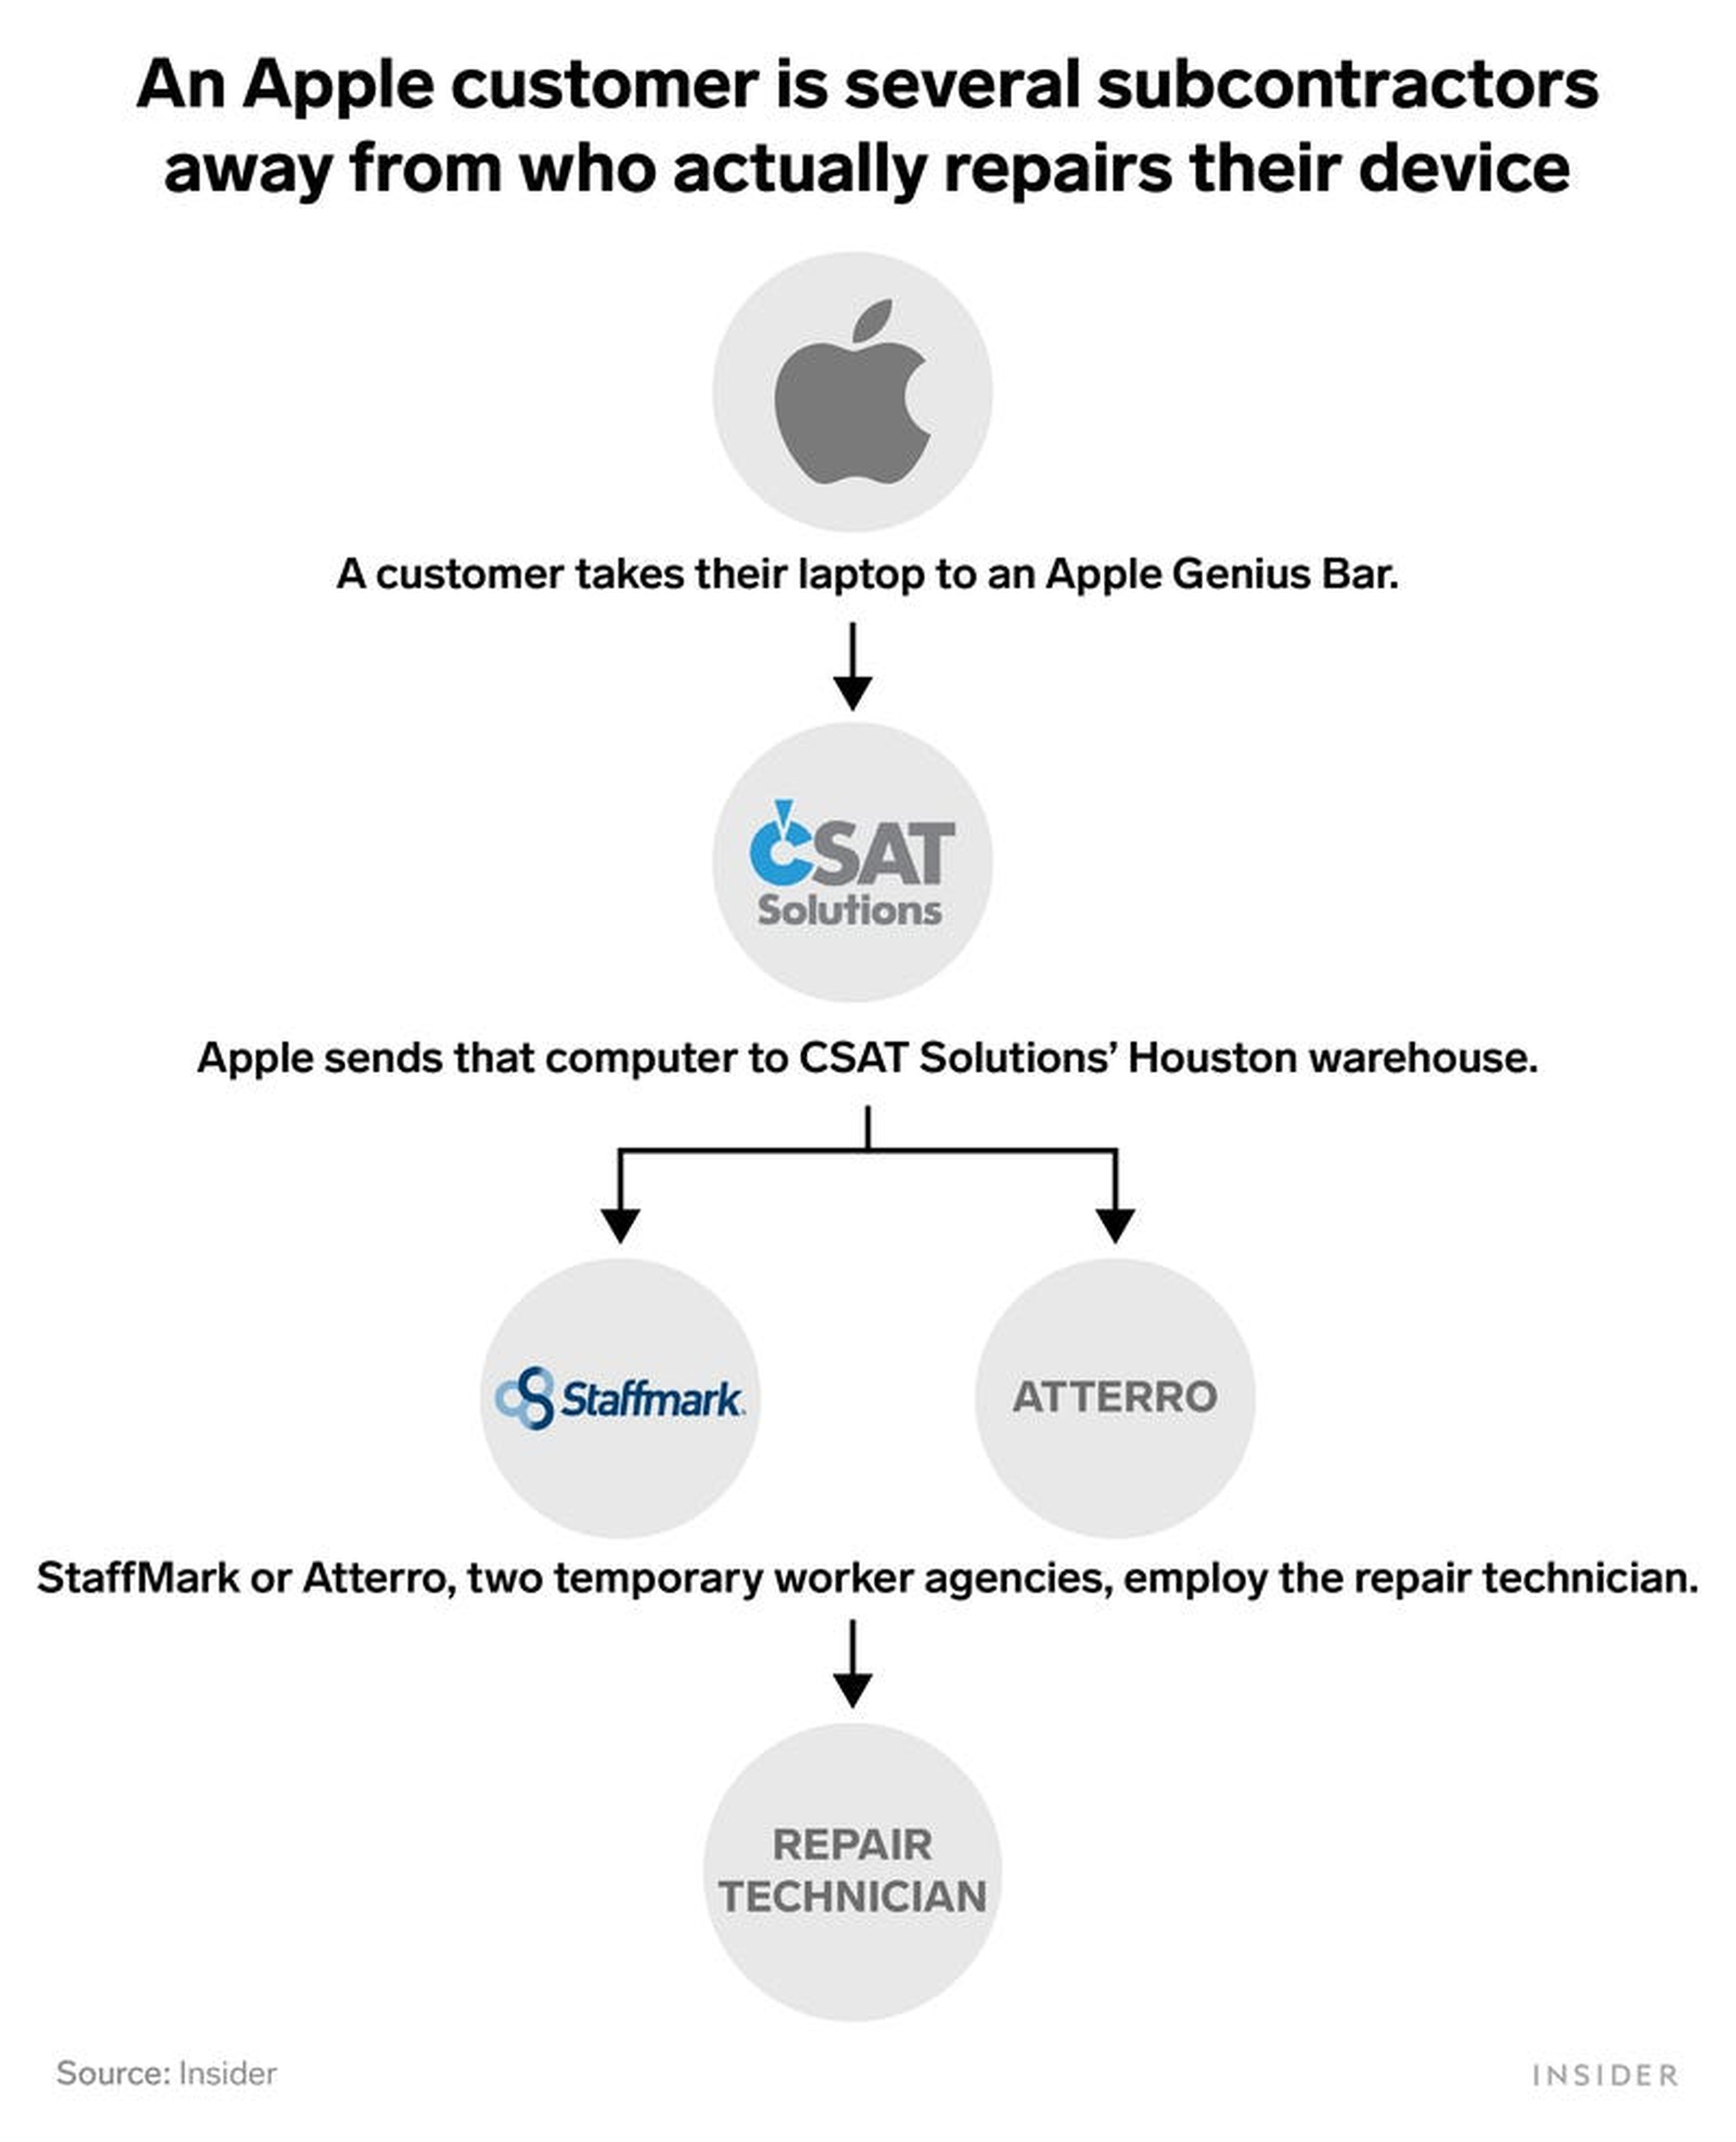 En el diagrama se puede observar como un cliente de Apple está a varios subcontratistas de quien realmente repara su dispositivo.